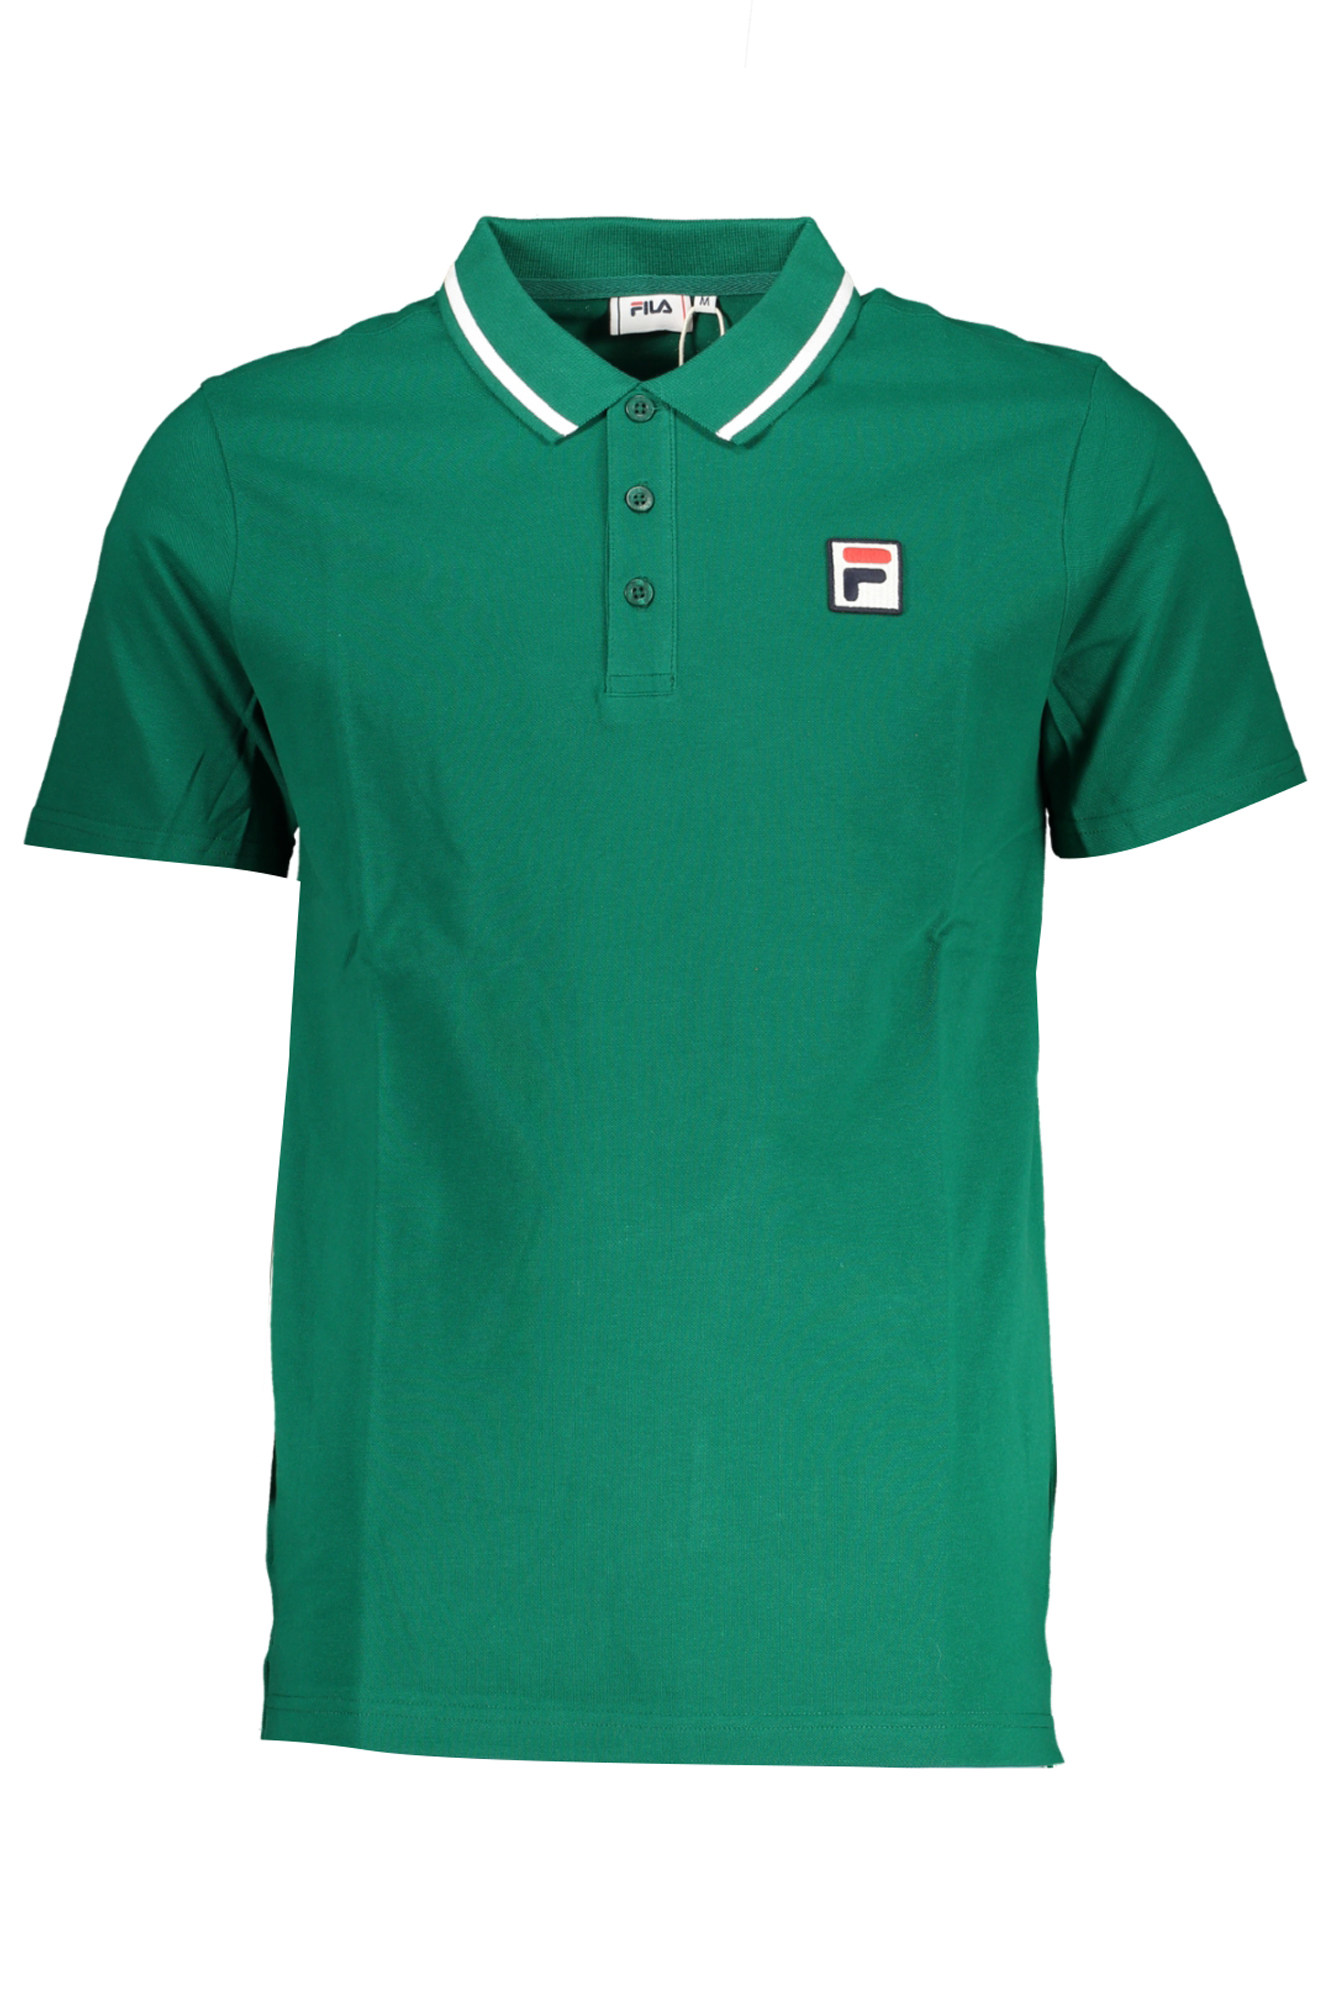 Fila® Polo Verde Homem 0613 - You Like It Store